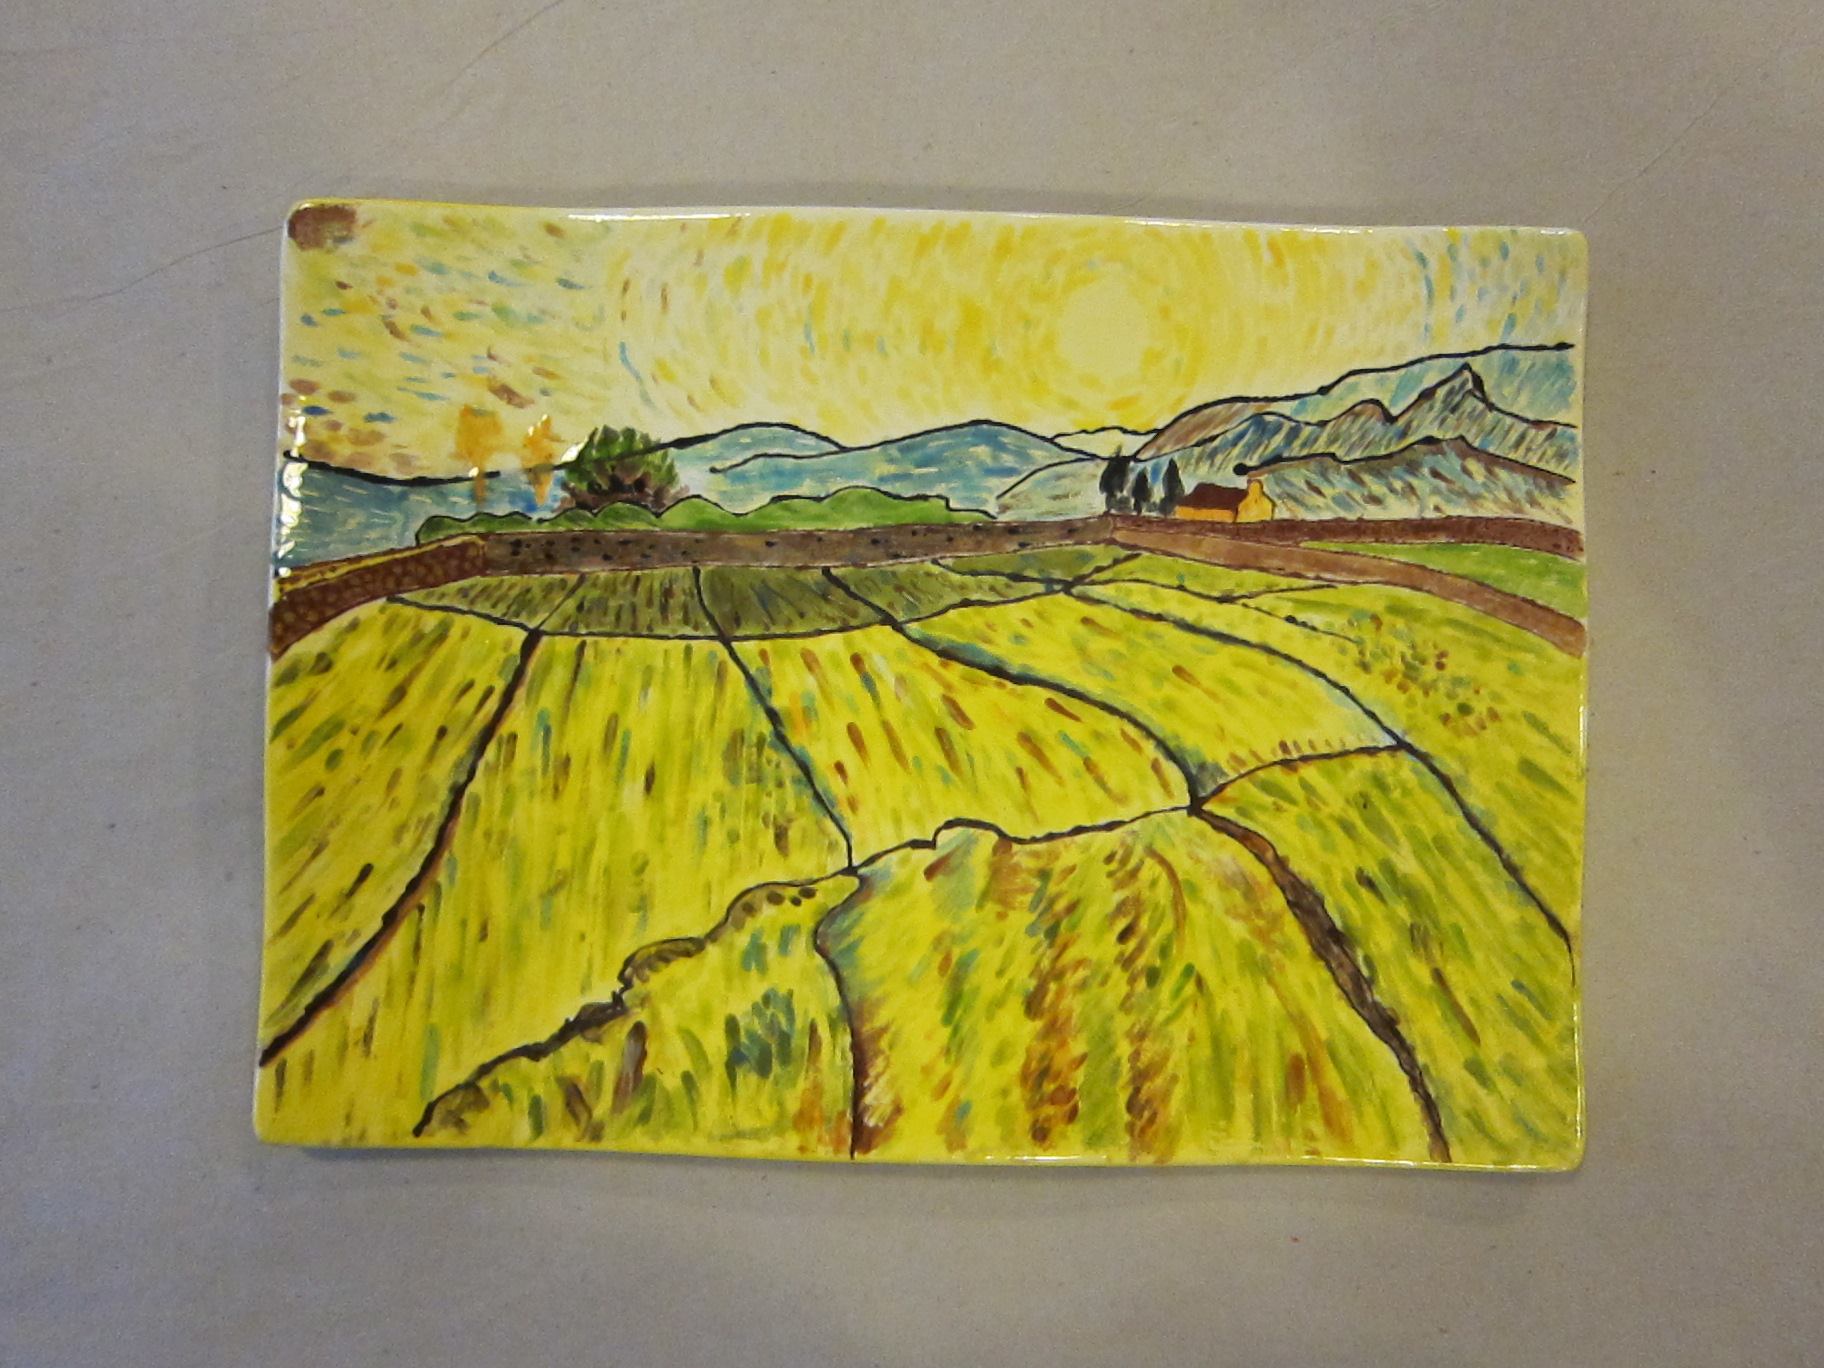 Van Gogh kerámiafestő foglalkozás - MadeByYou Budapest